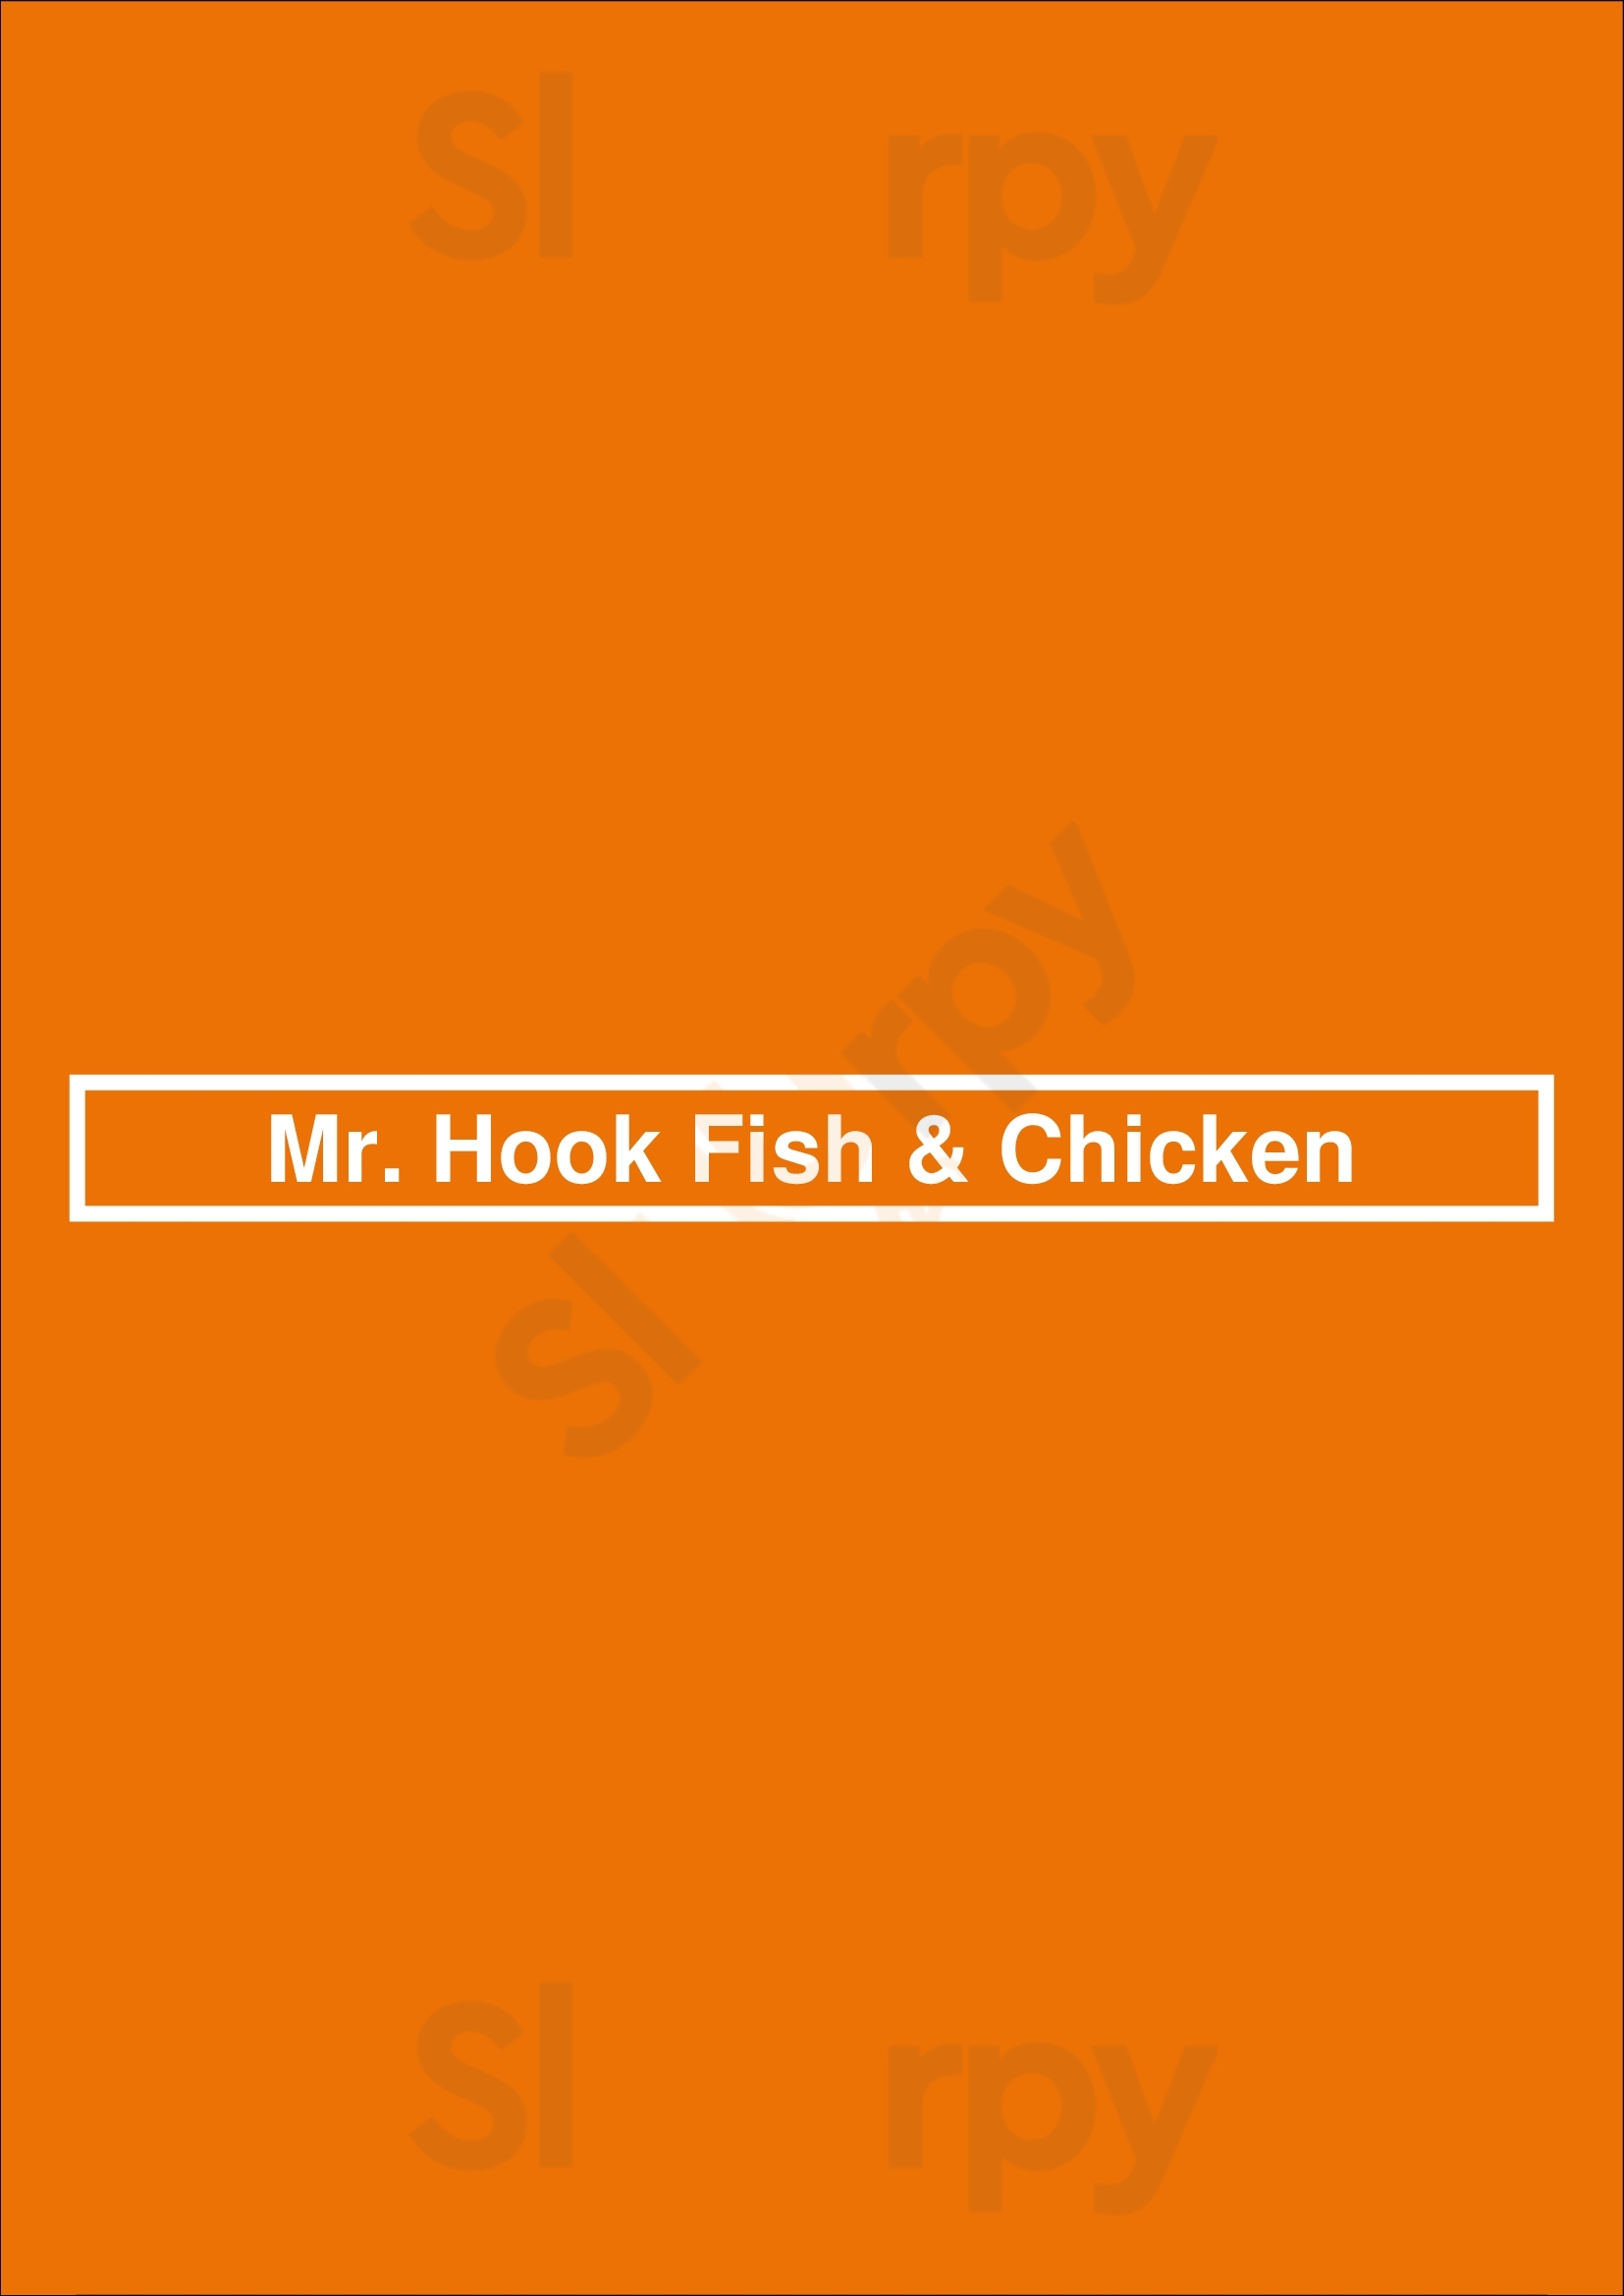 Mr. Hook Fish & Chicken Philadelphia Menu - 1